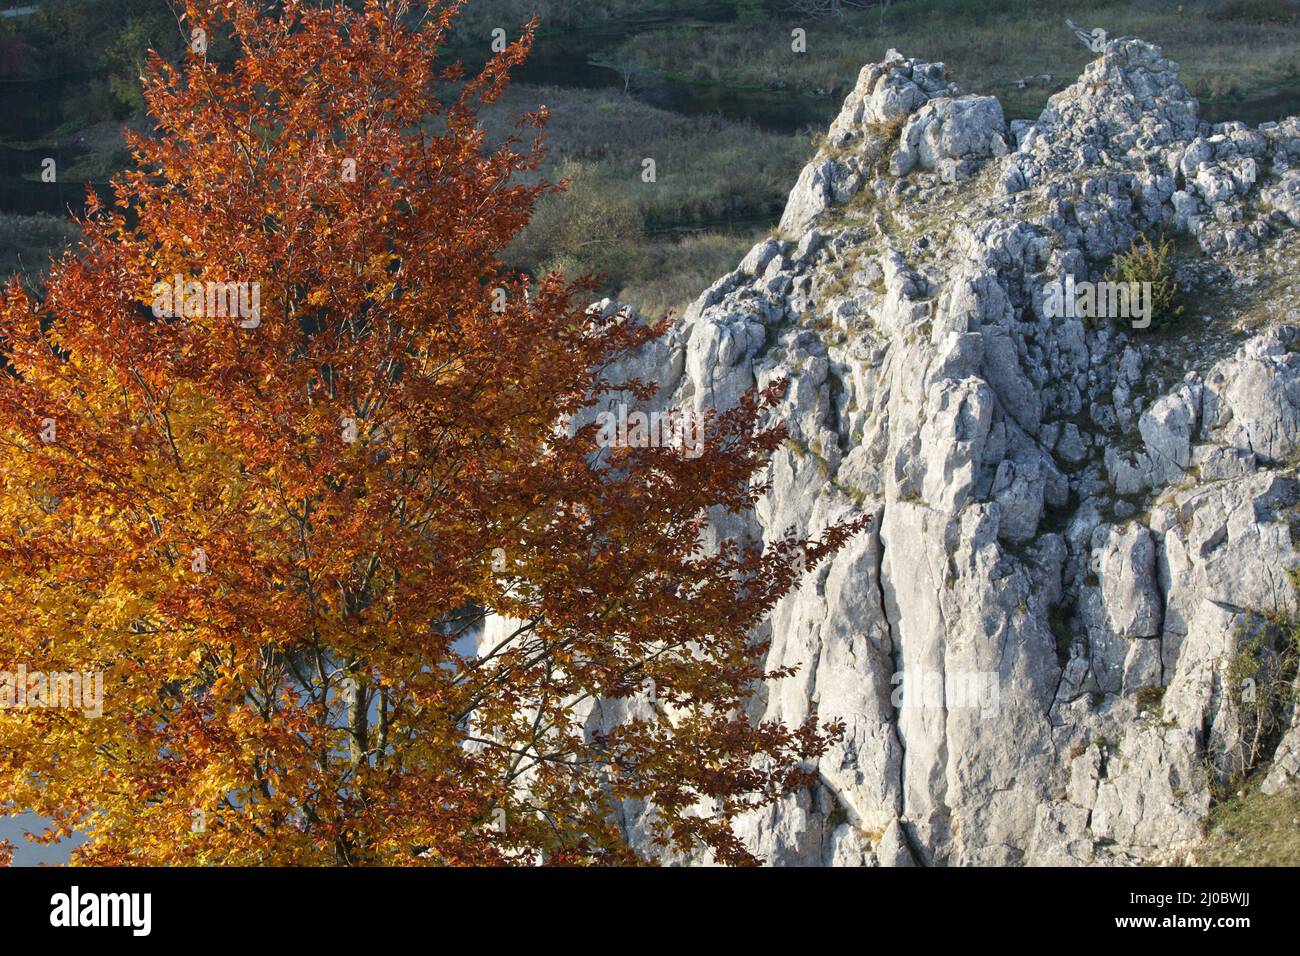 Formation de hêtre et de roche, Eselsburger Tal, Jura souabe, Allemagne Banque D'Images